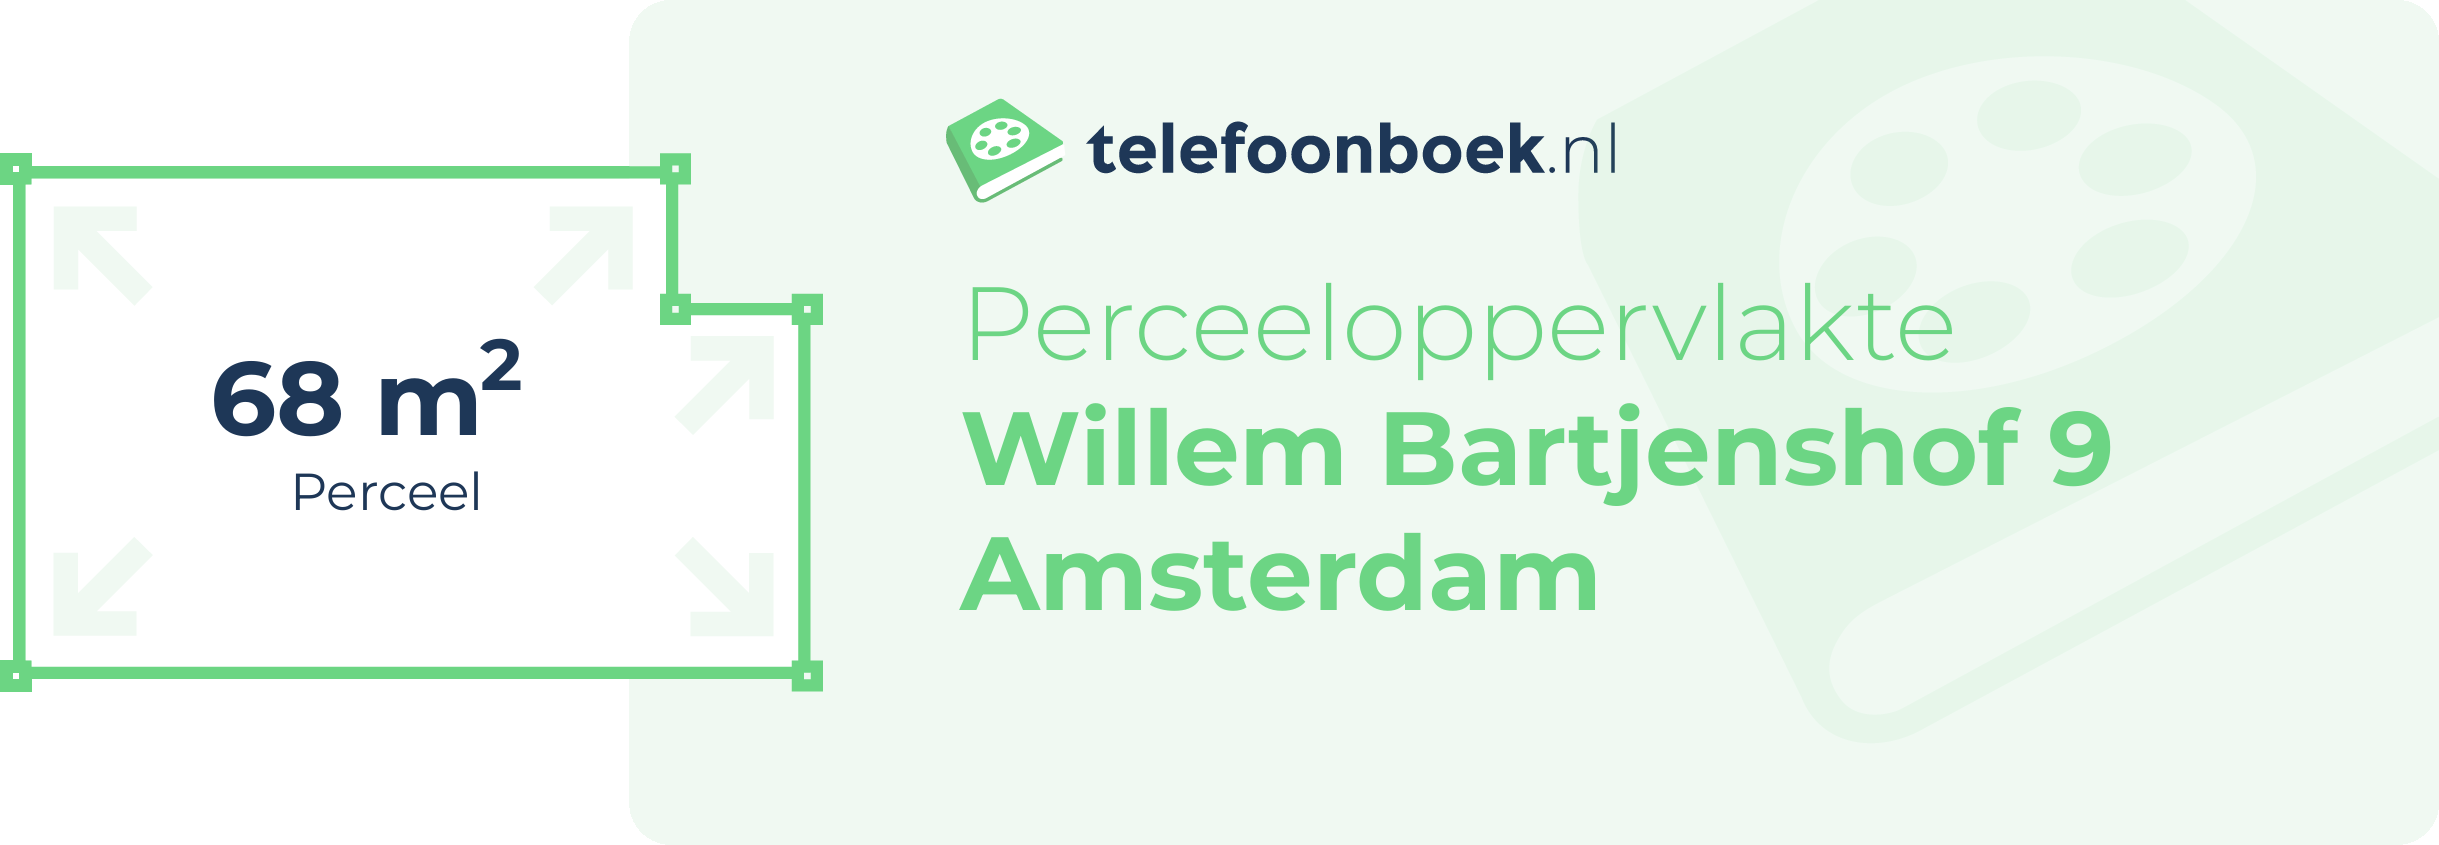 Perceeloppervlakte Willem Bartjenshof 9 Amsterdam